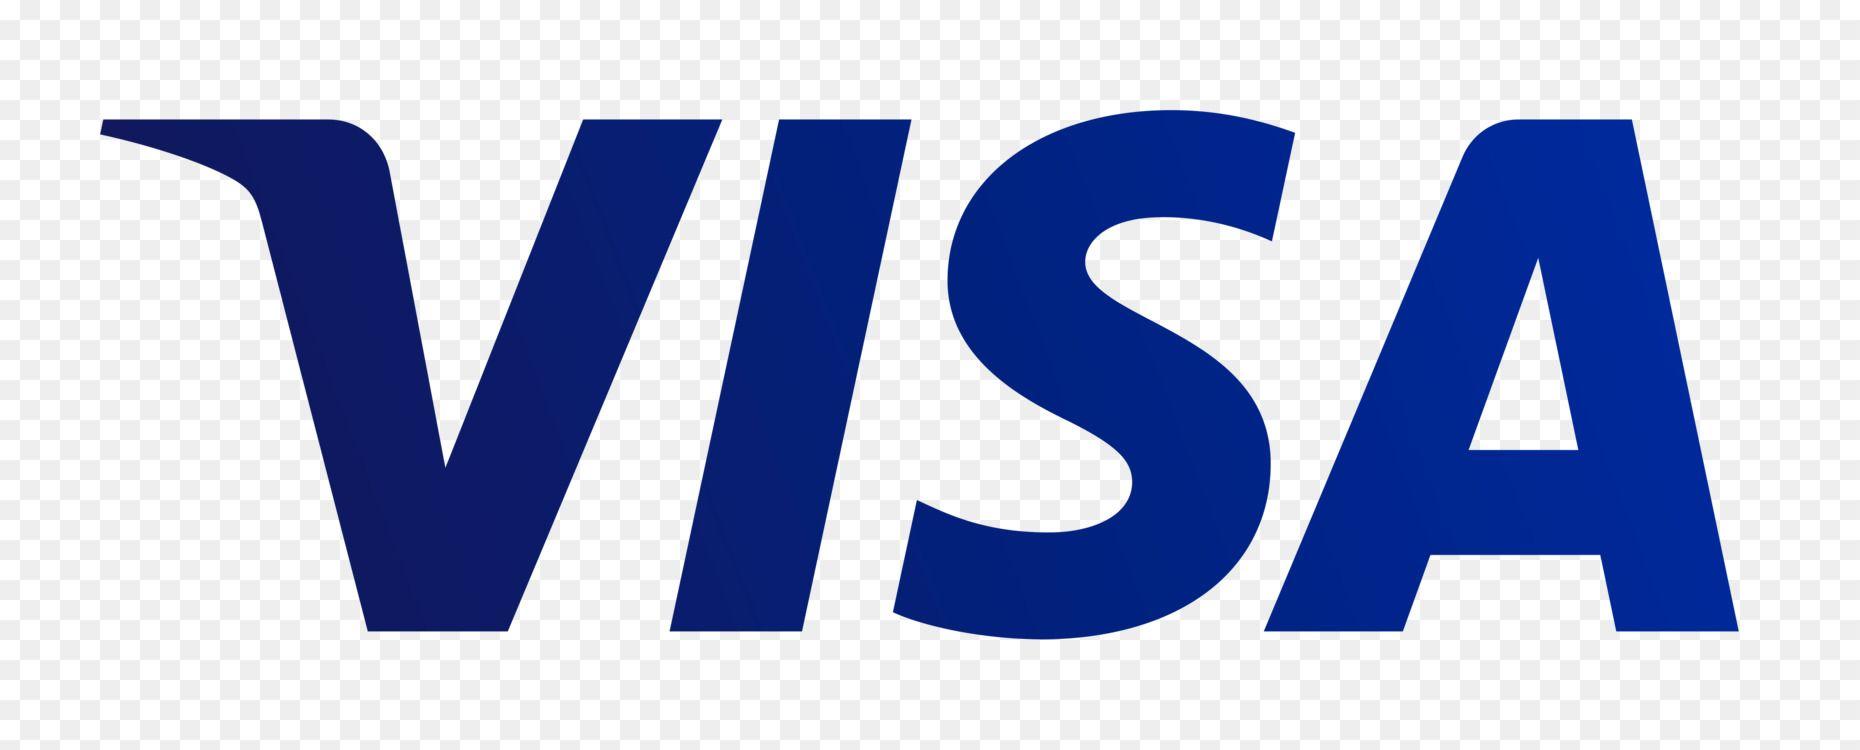 Credit Card Visa MasterCard Logo - Visa Mastercard Credit card Debit card Plus Free PNG Image - Visa ...